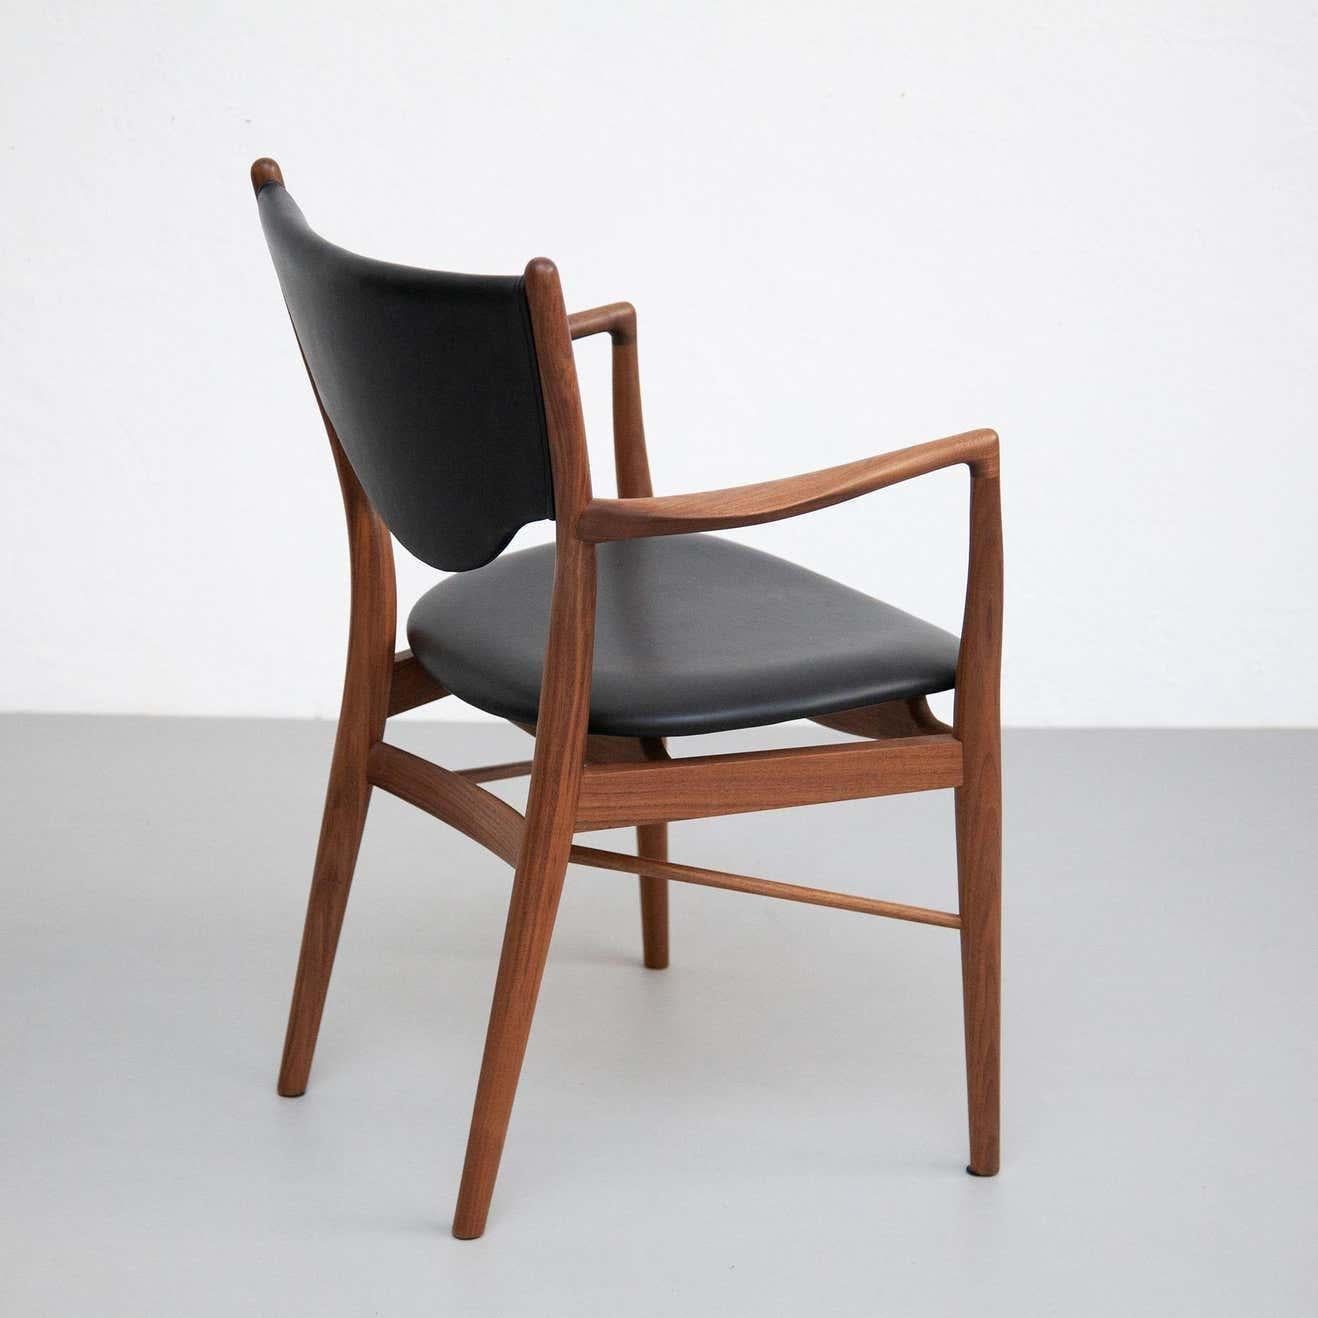 Ce fauteuil The Modern Scandinavian Design/One 46 de Finn Juhls est un véritable chef-d'œuvre du design danois. Conçue à l'origine en 1946 pour l'exposition de la Guild de Copenhague pour le maître ébéniste Niels Vodder, cette chaise est un exemple